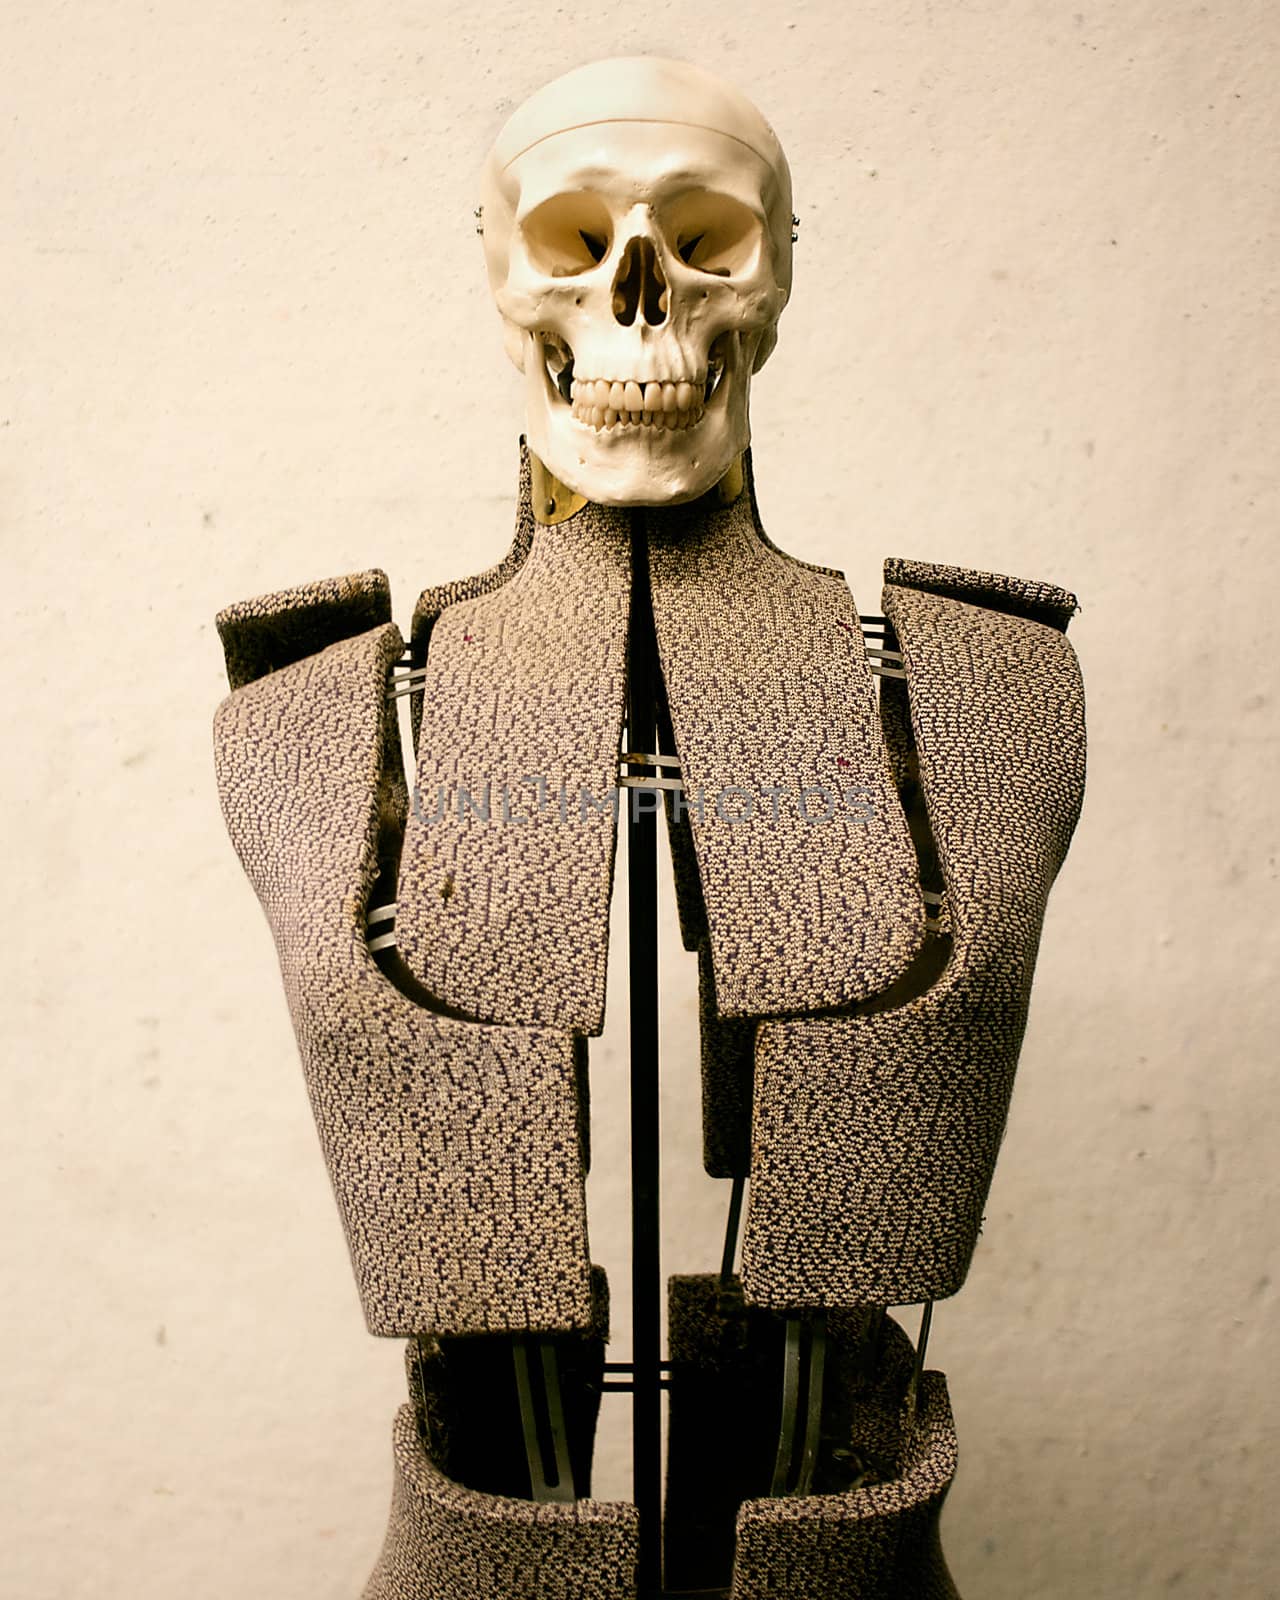 A skeleton's head on a dress form.
